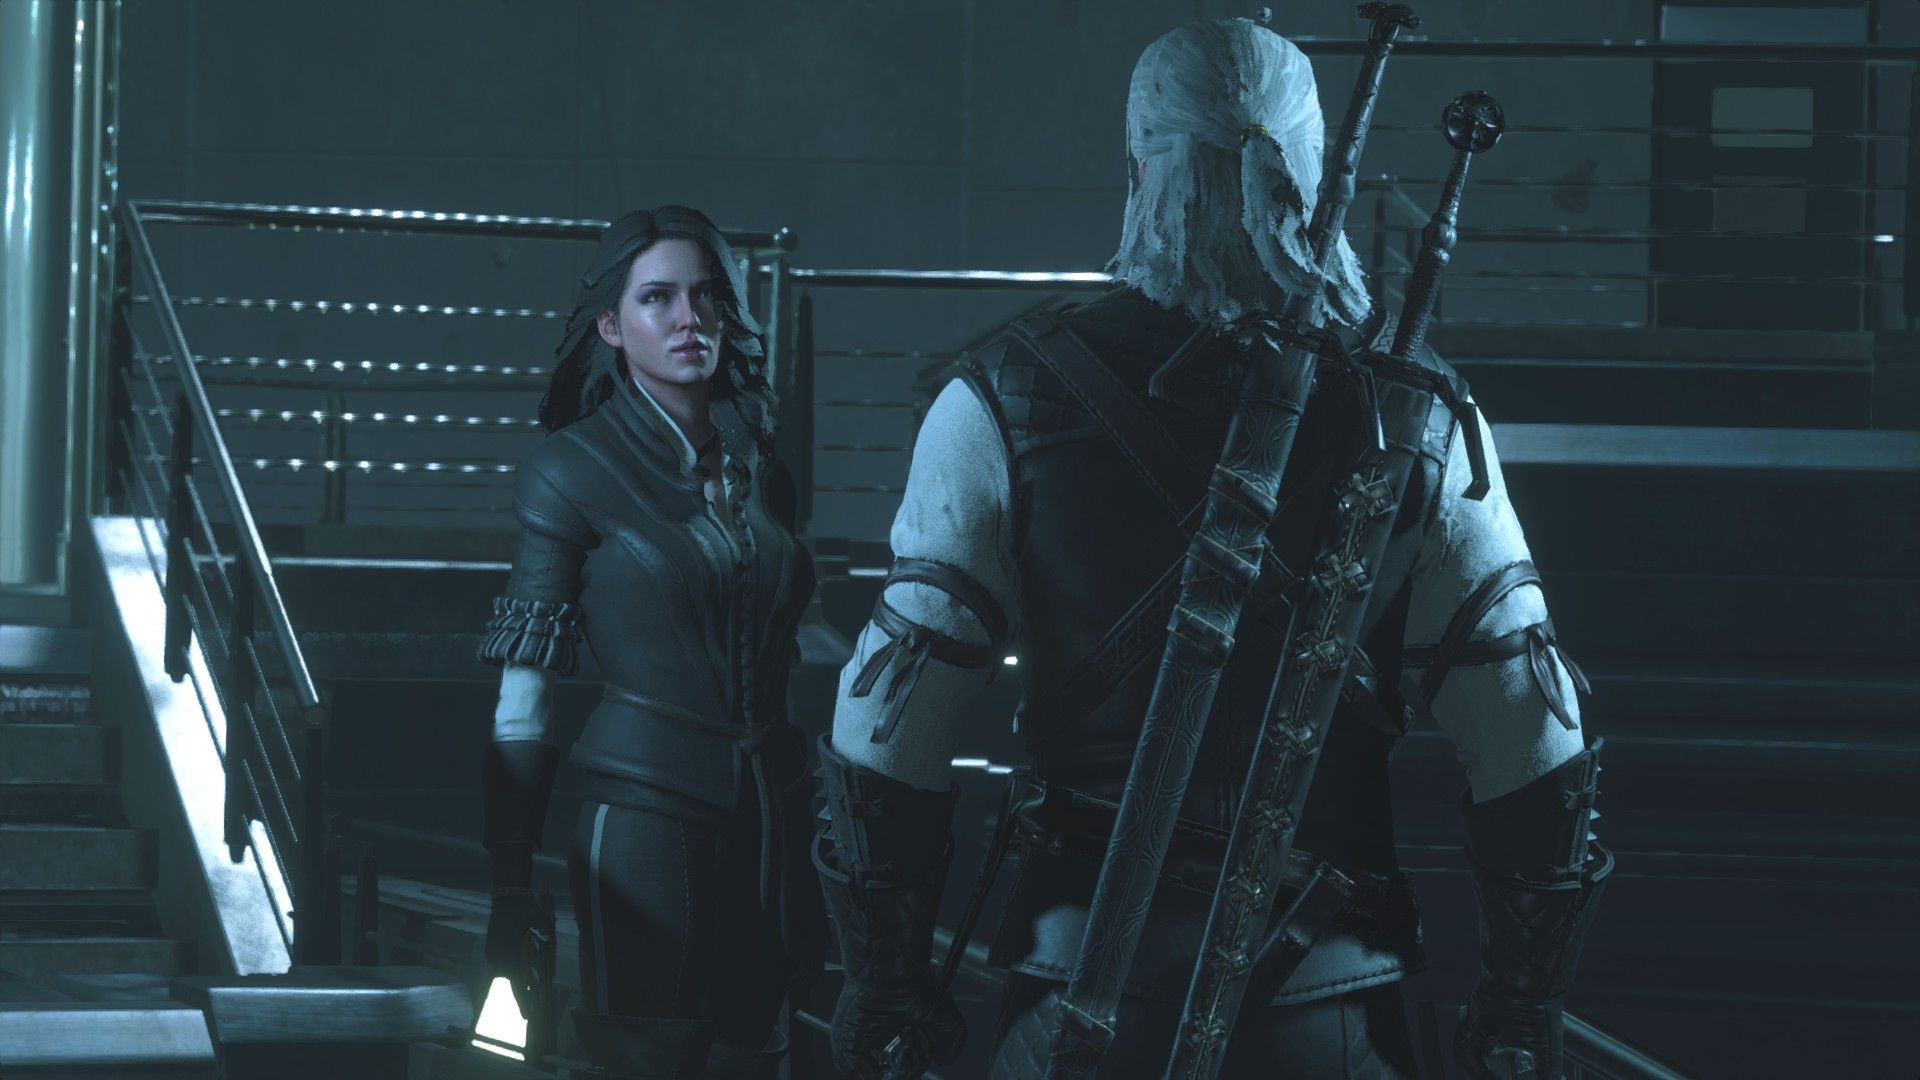 Йеннифэр в Resident Evil 2.
Источник: Nexus Mods